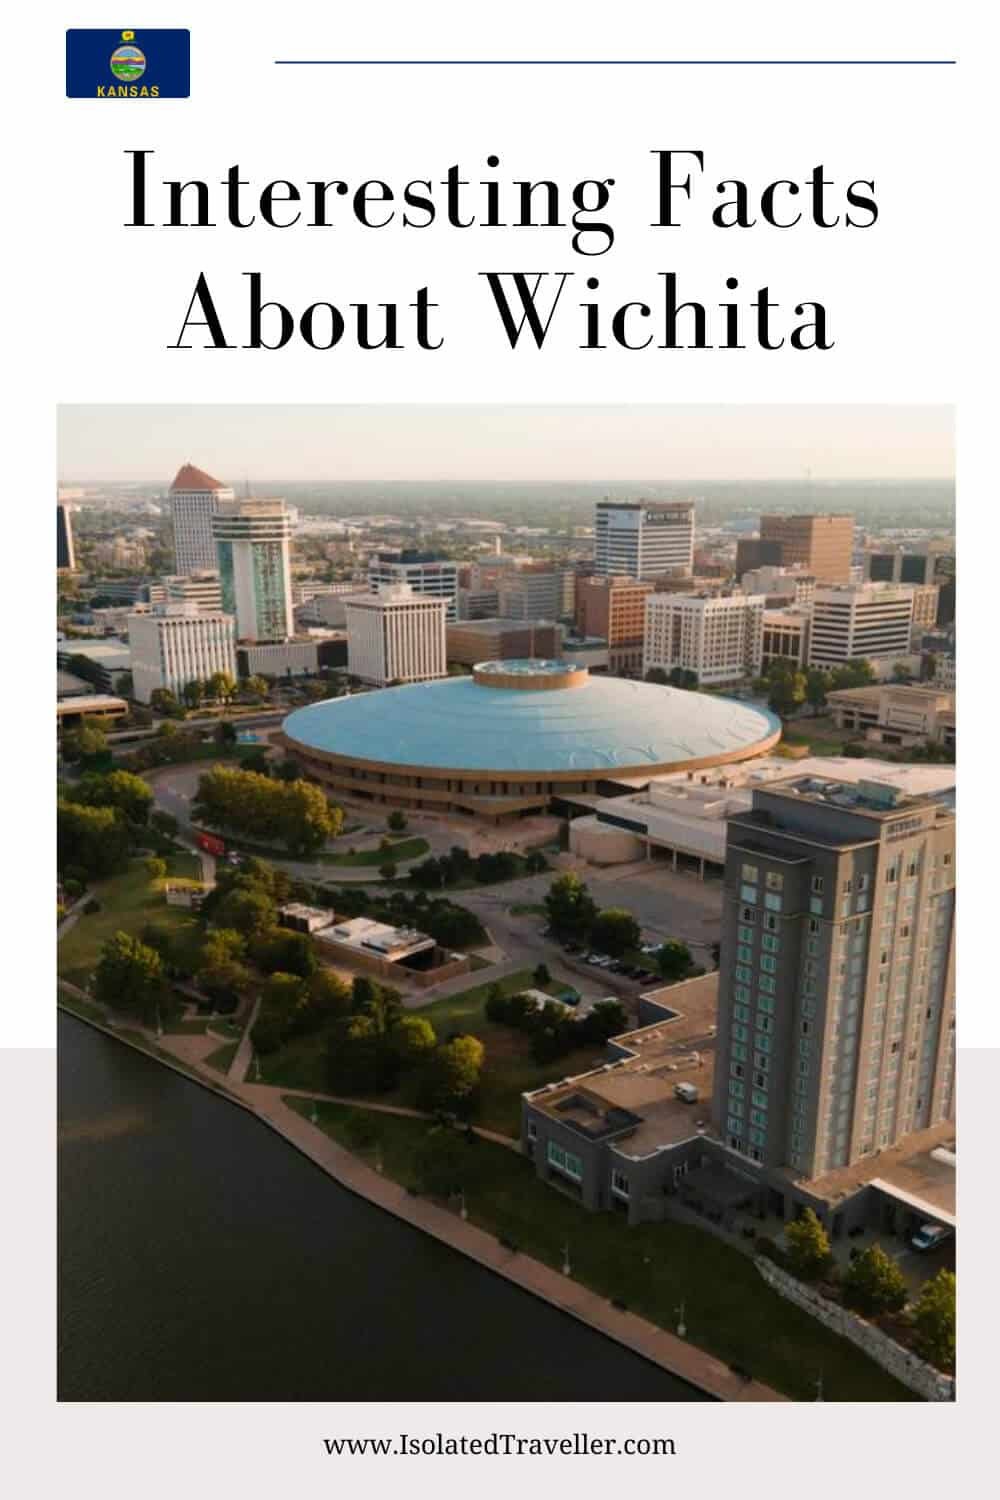 Facts About Wichita